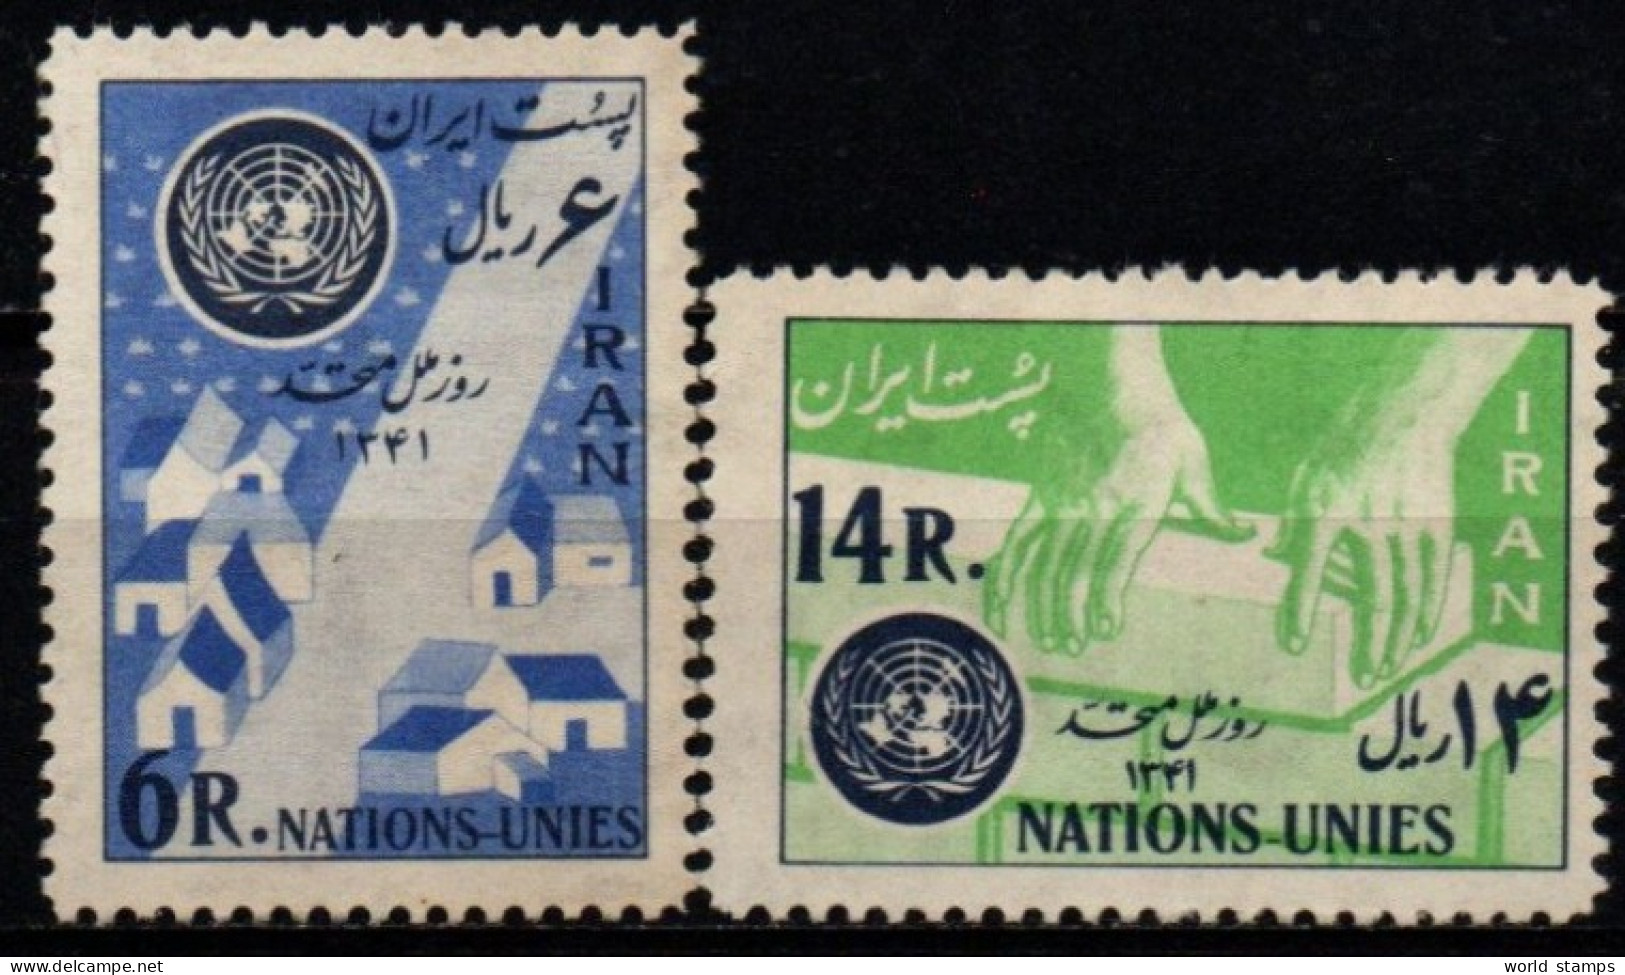 IRAN 1962 ** 2 SCAN - Iran